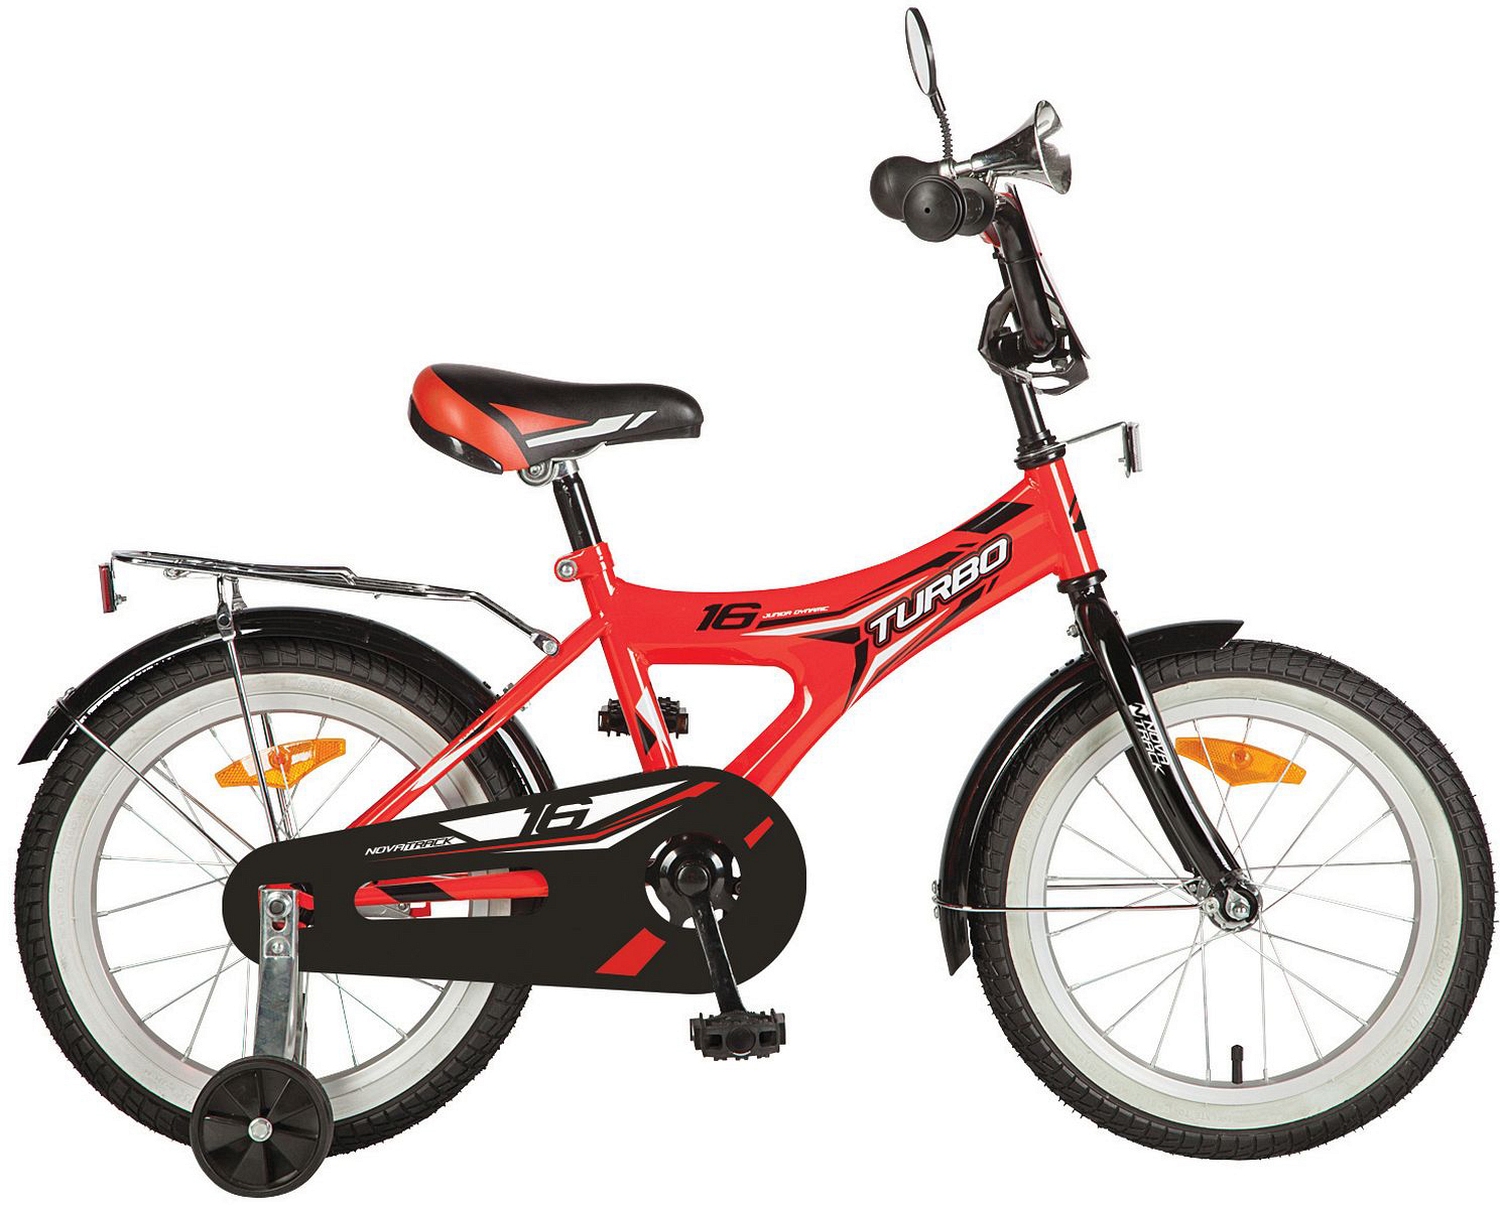  Отзывы о Детском велосипеде Novatrack Turbo 16 2020